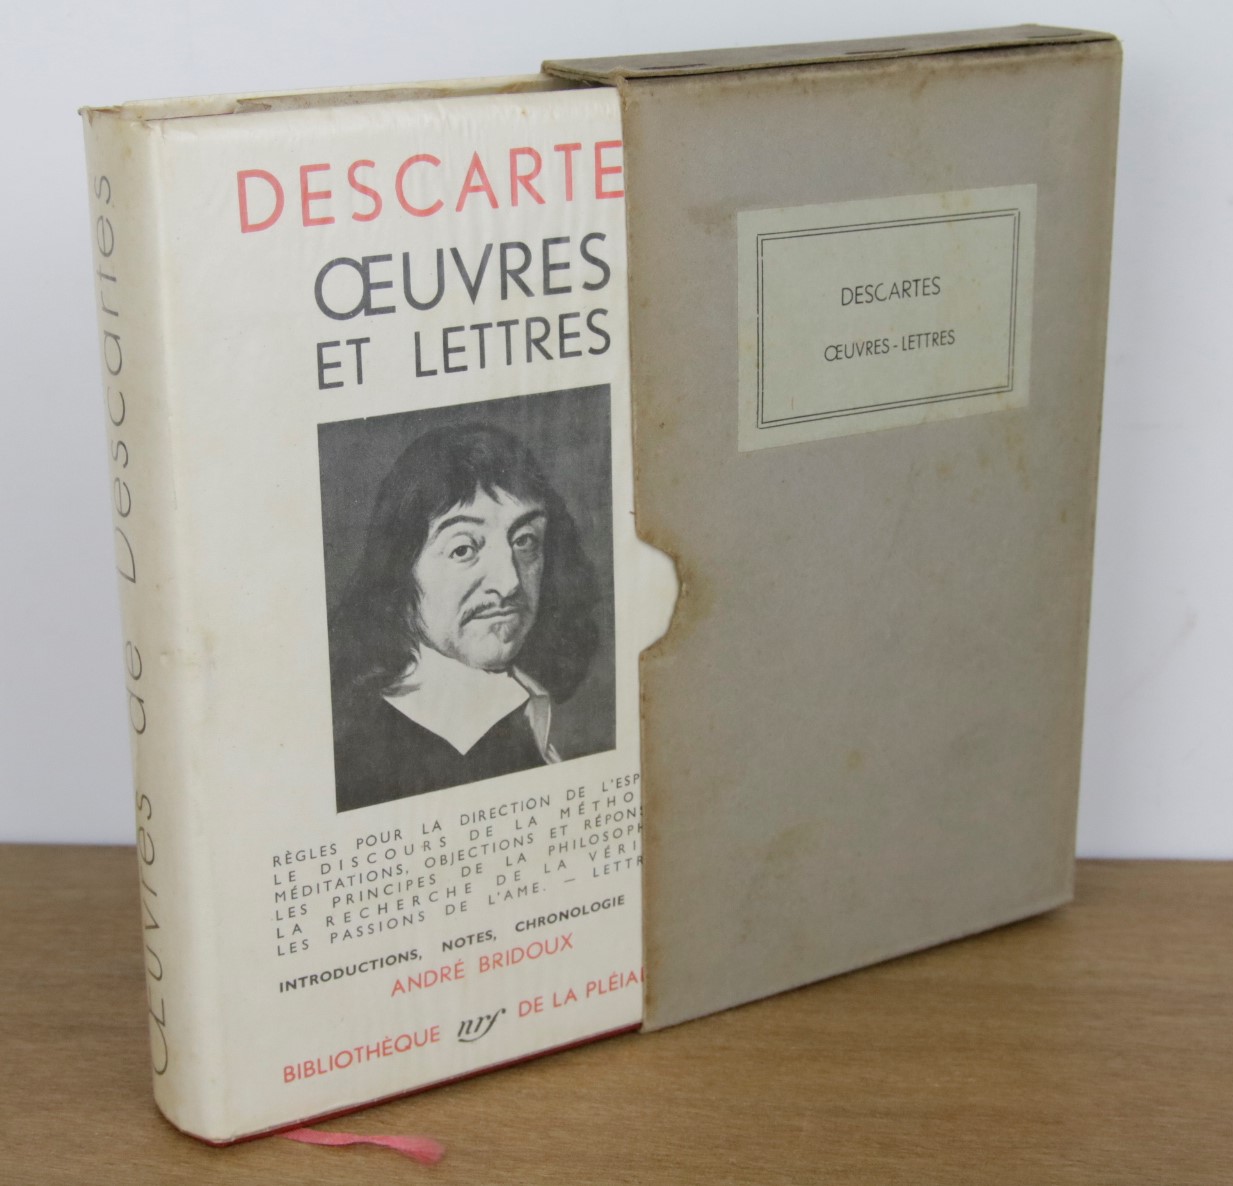 Descartes dans la bibliothèque de la Pléiade.